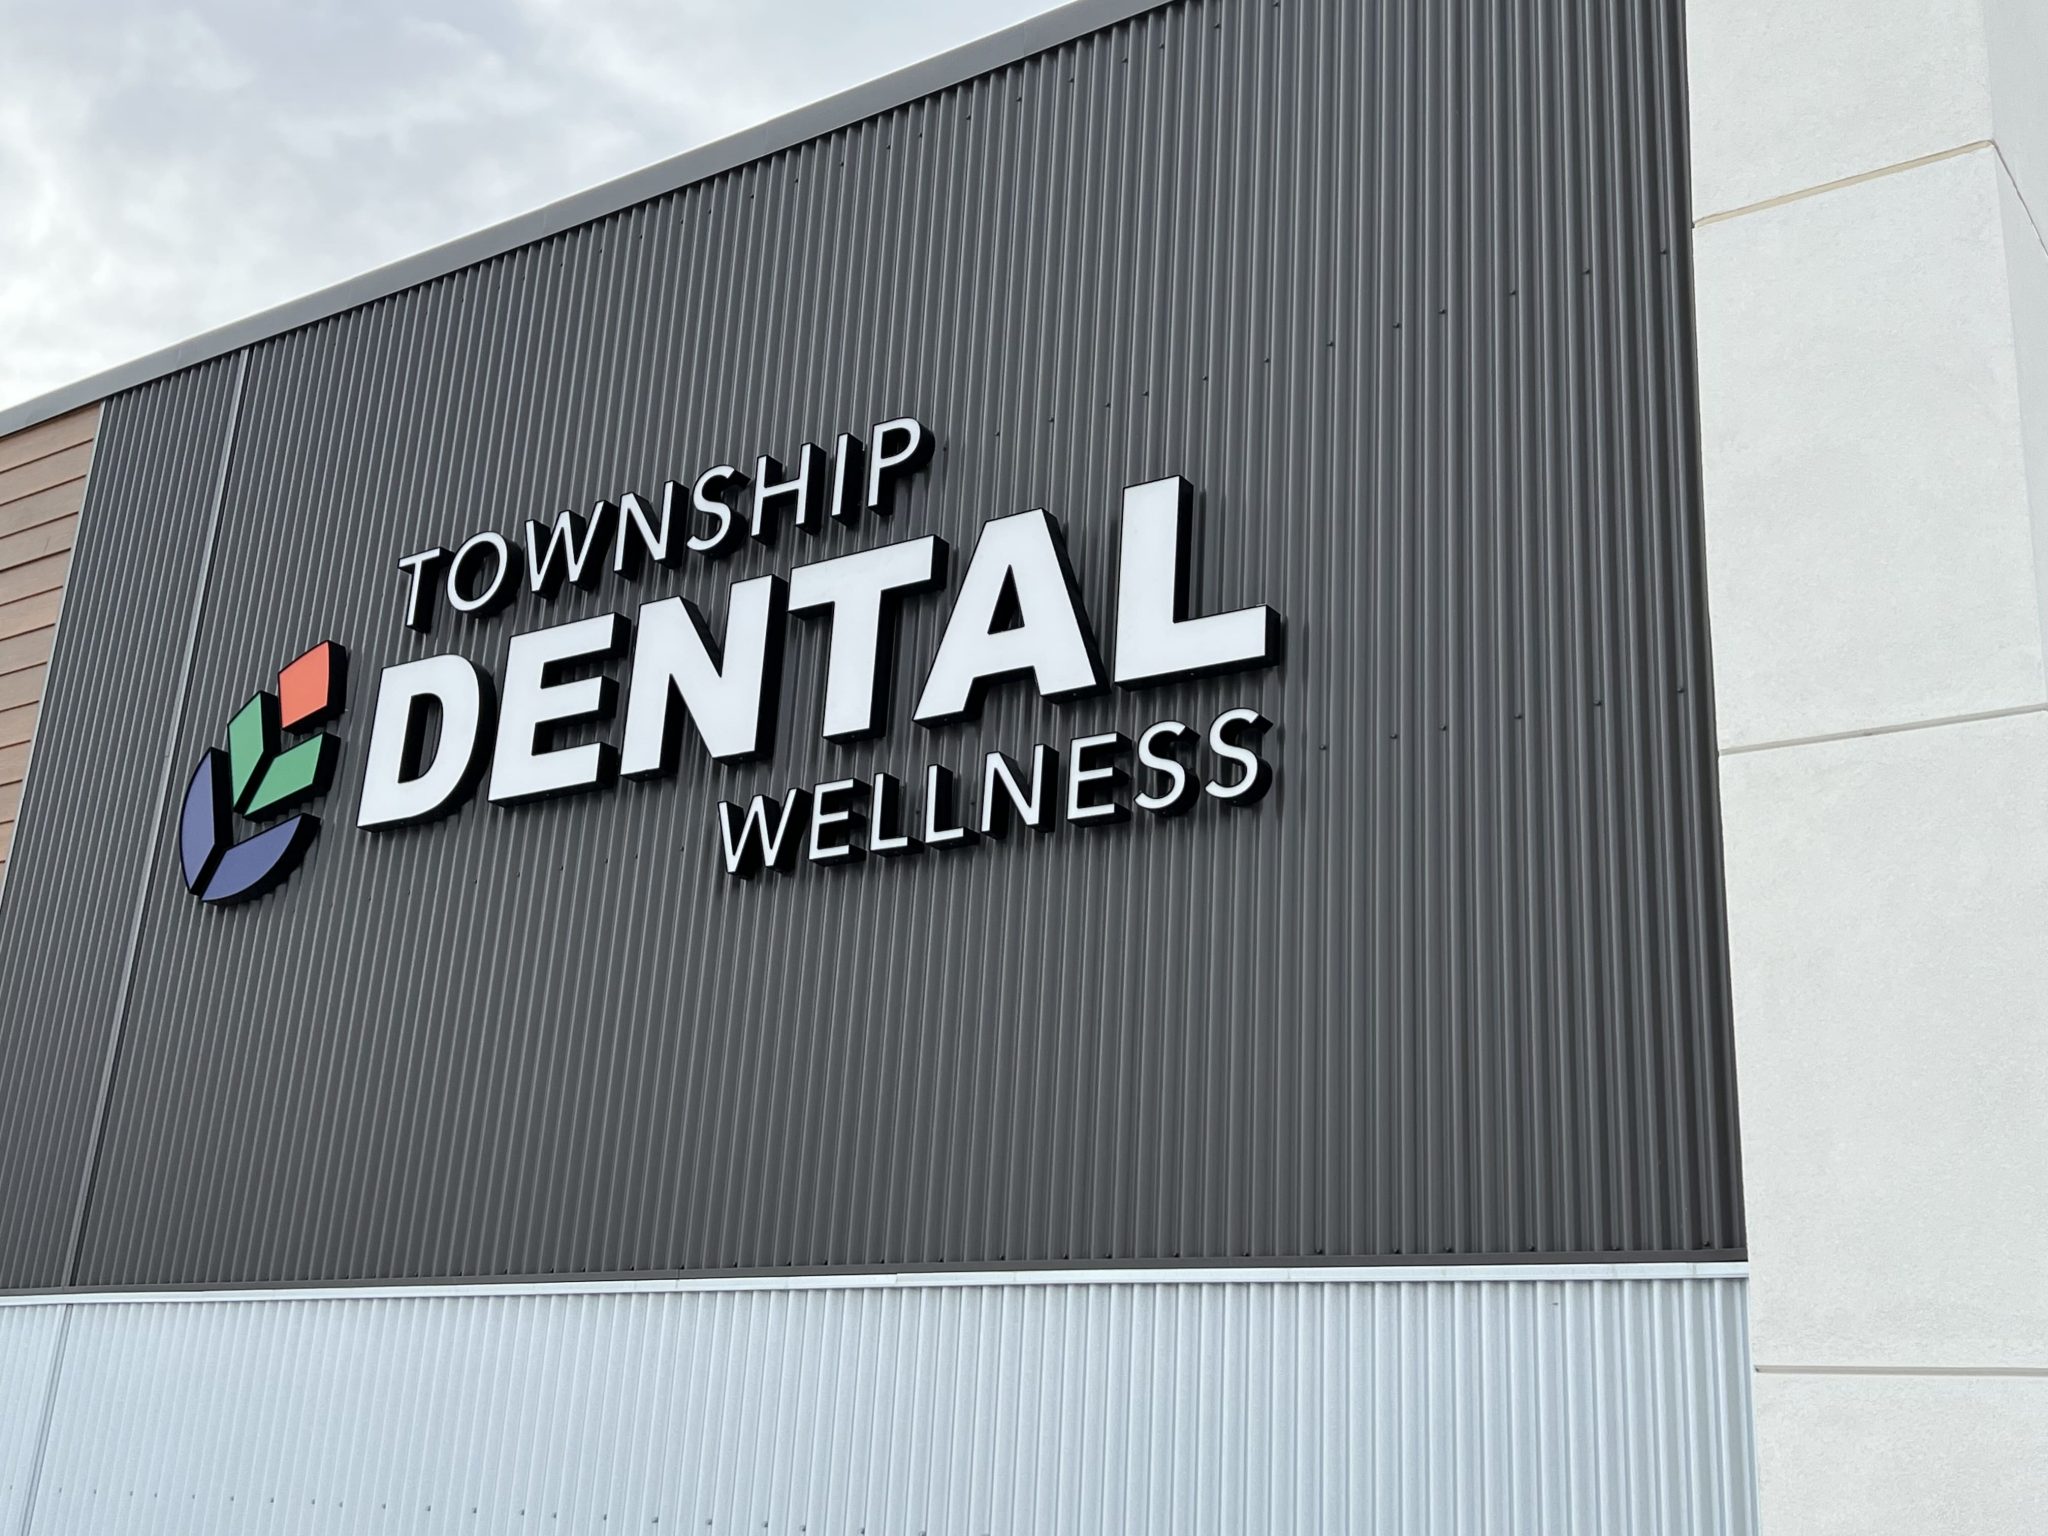 Township Dental Wellness Office